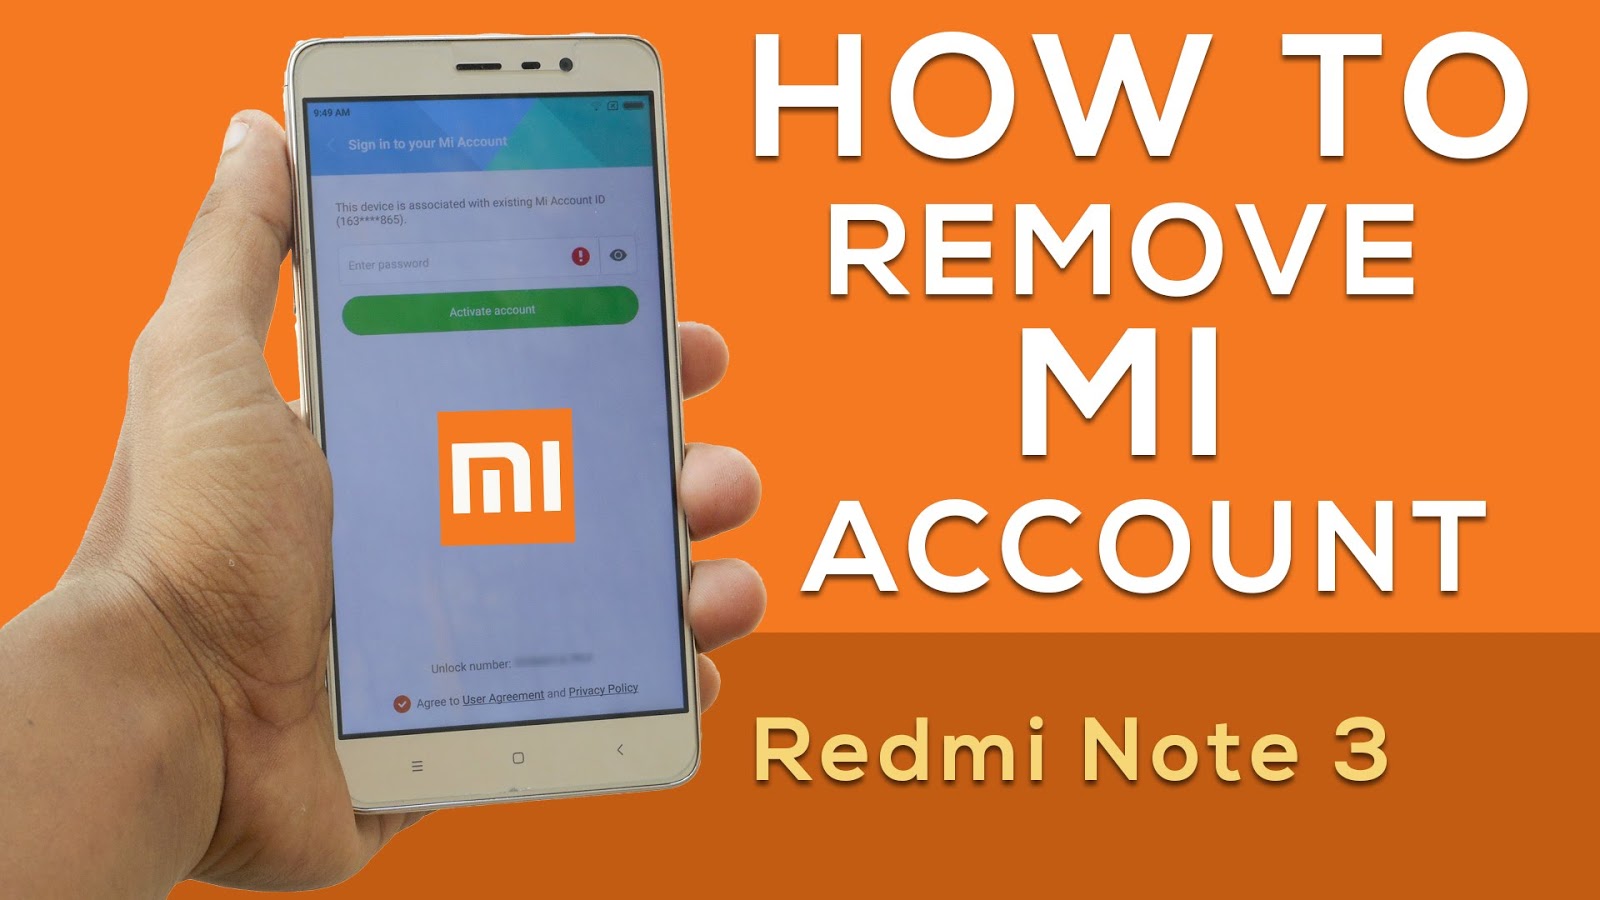 Redmi Note 5 Mi Account Unlock